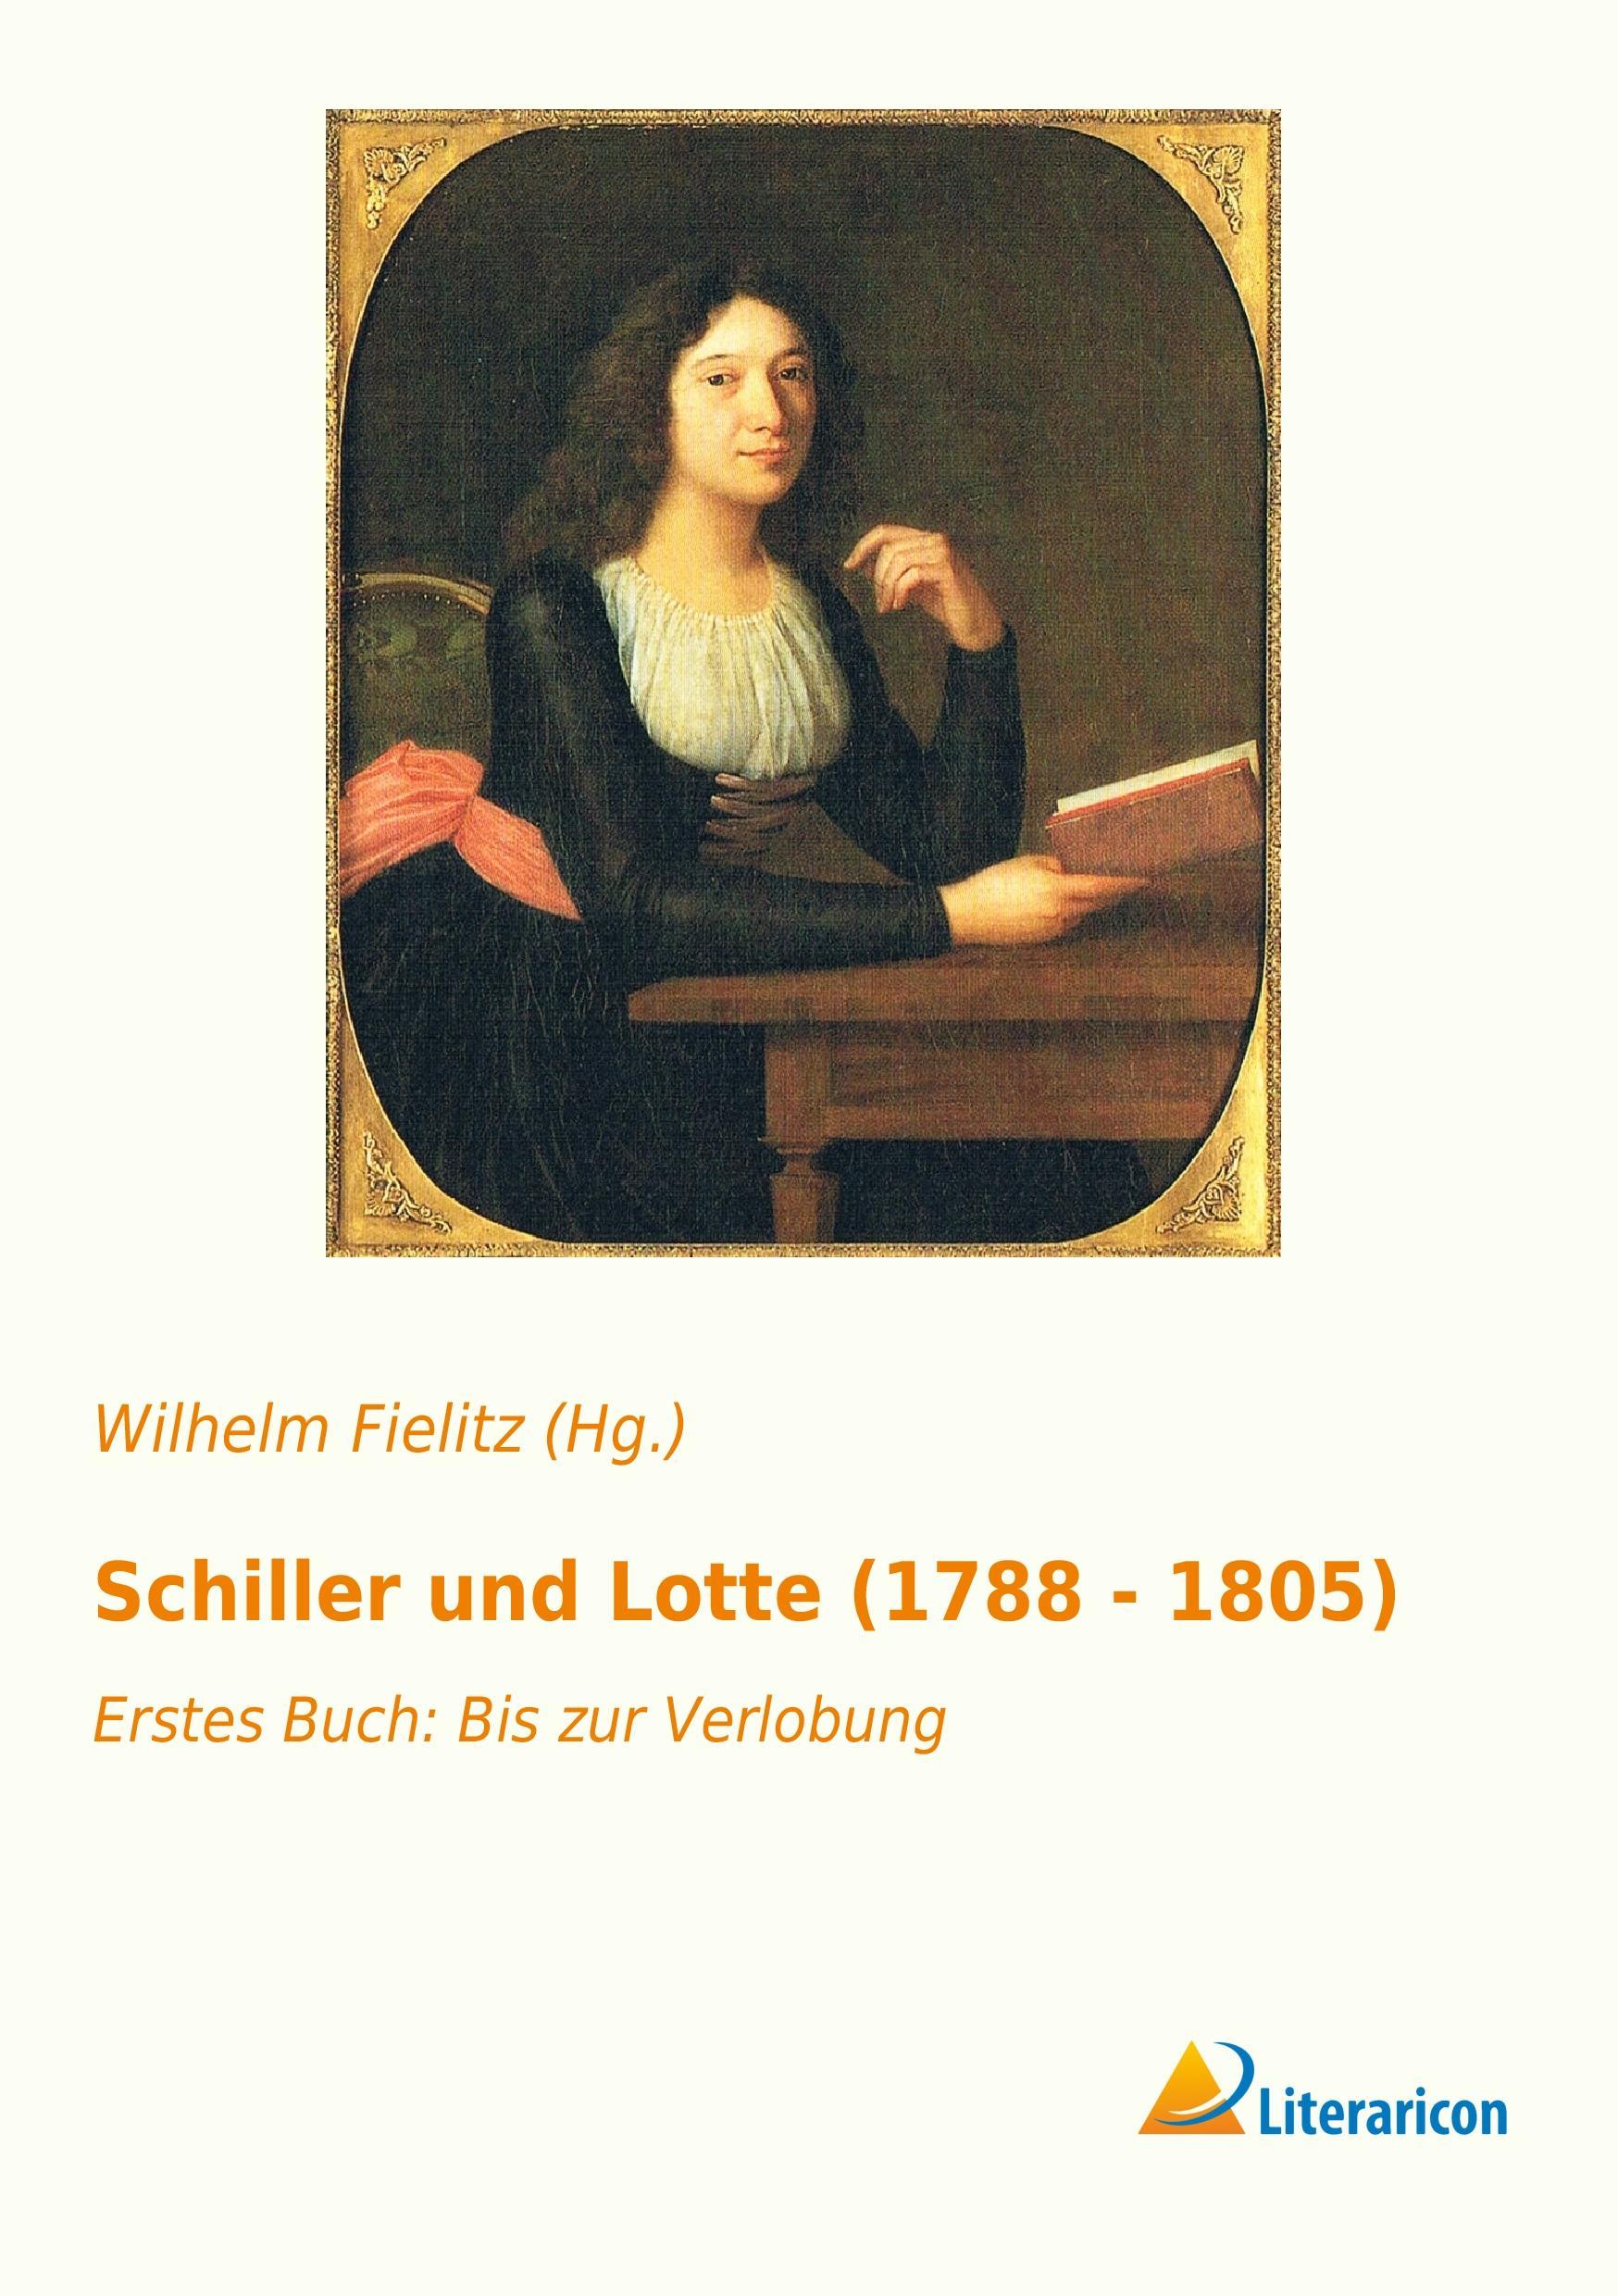 Schiller und Lotte (1788 - 1805) | Erstes Buch: Bis zur Verlobung | Wilhelm Fielitz (Hg. | Taschenbuch | Paperback | 360 S. | Deutsch | 2016 | Literaricon Verlag | EAN 9783956975868 - Fielitz (Hg., Wilhelm